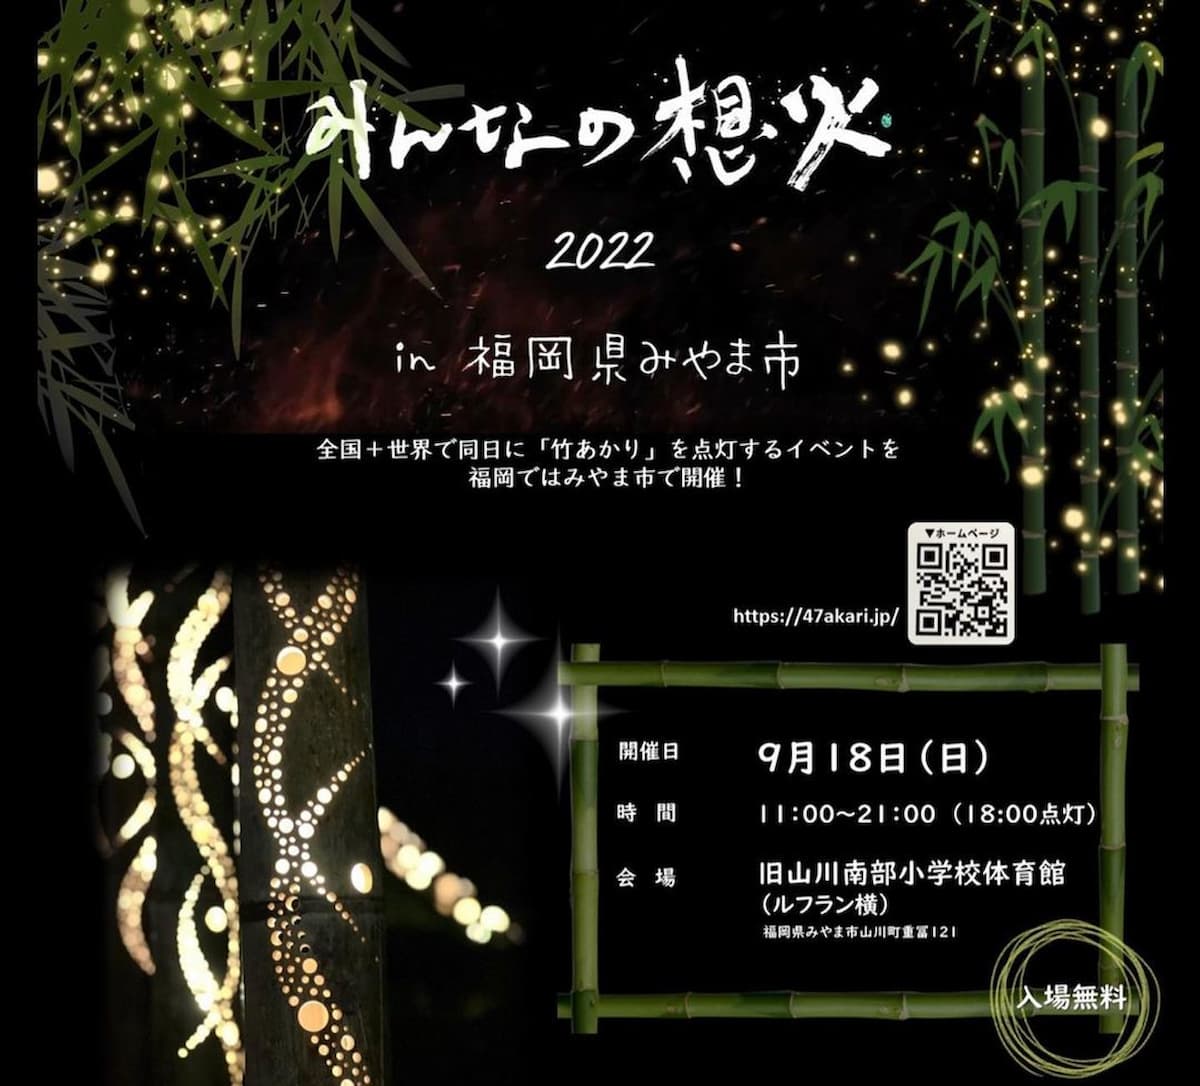 【中止】みんなの想火2022 in 福岡県みやま市って竹あかりイベントが開催されるみたい。9月18日